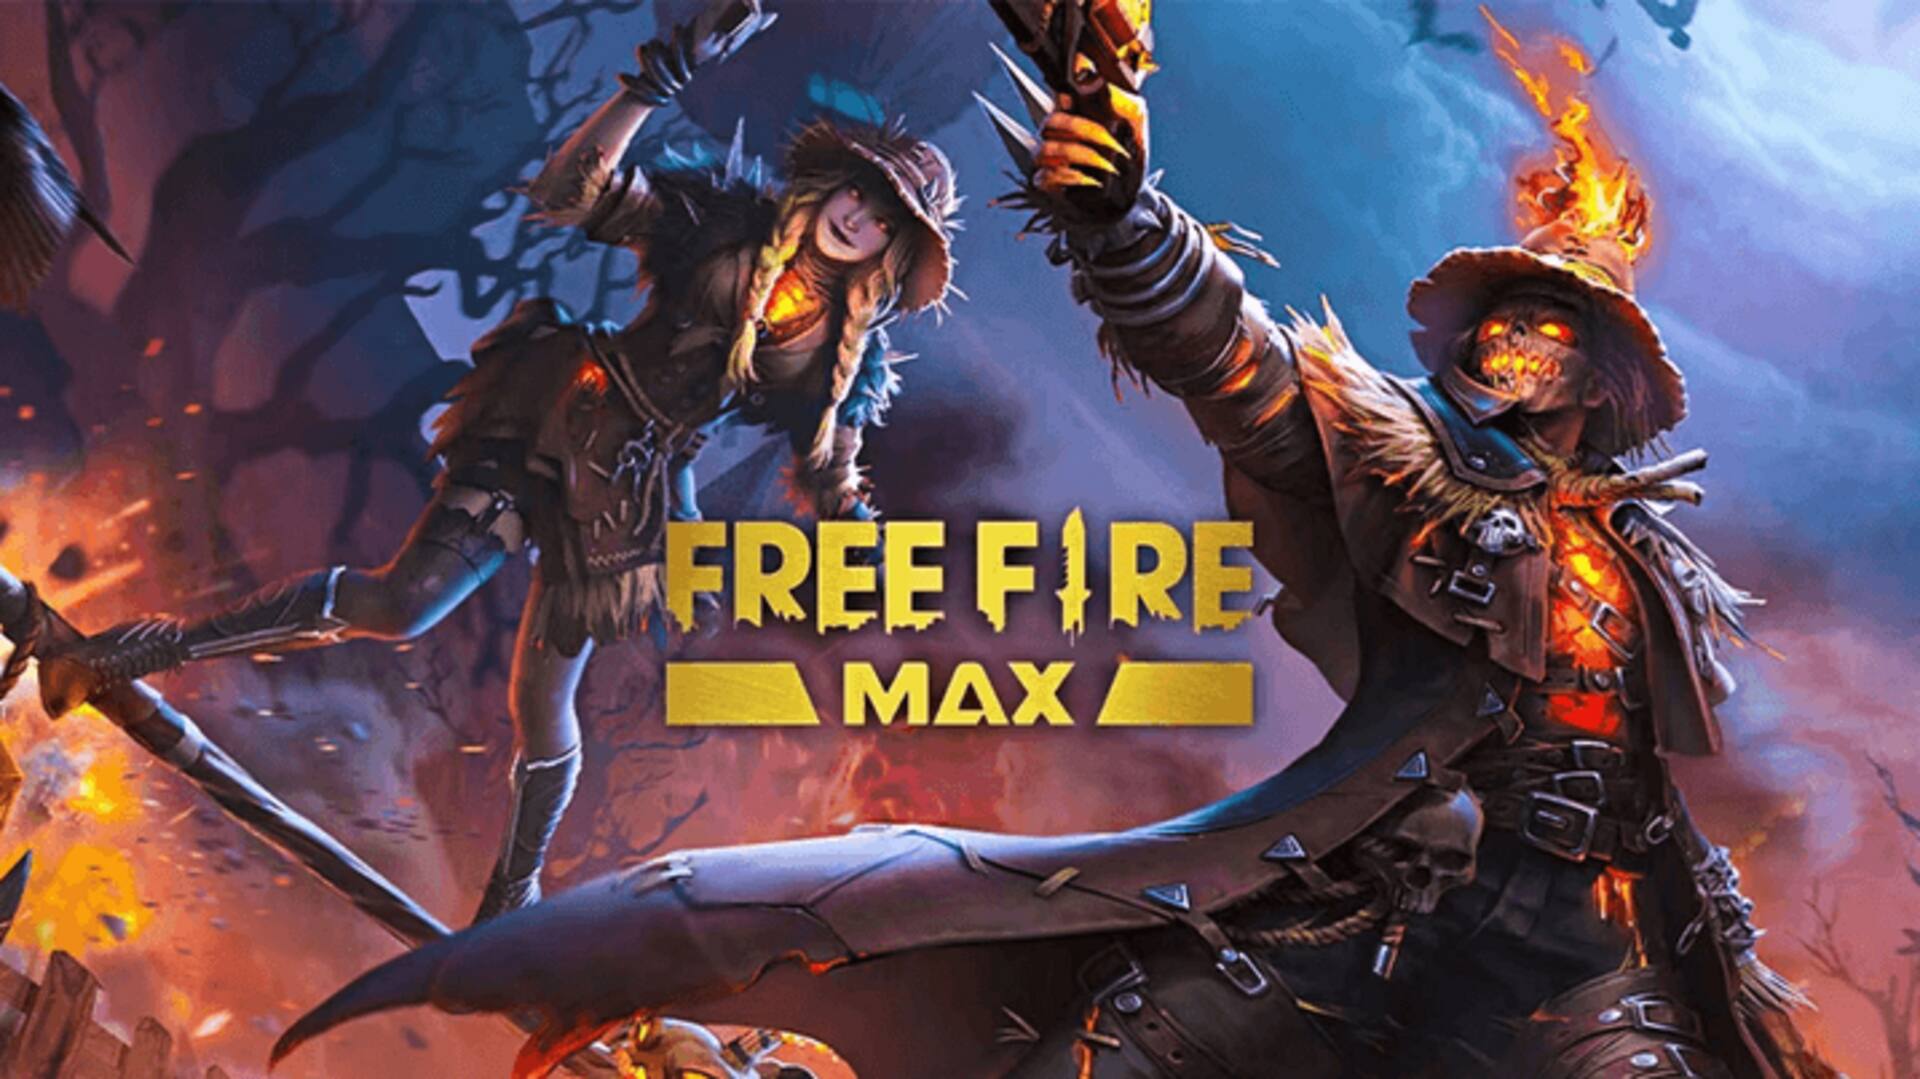 ஏப்ரல் 27-க்கான Free Fire MAX இலவச குறியீடுகள்: பெறுவதற்கான வழிமுறைகள்